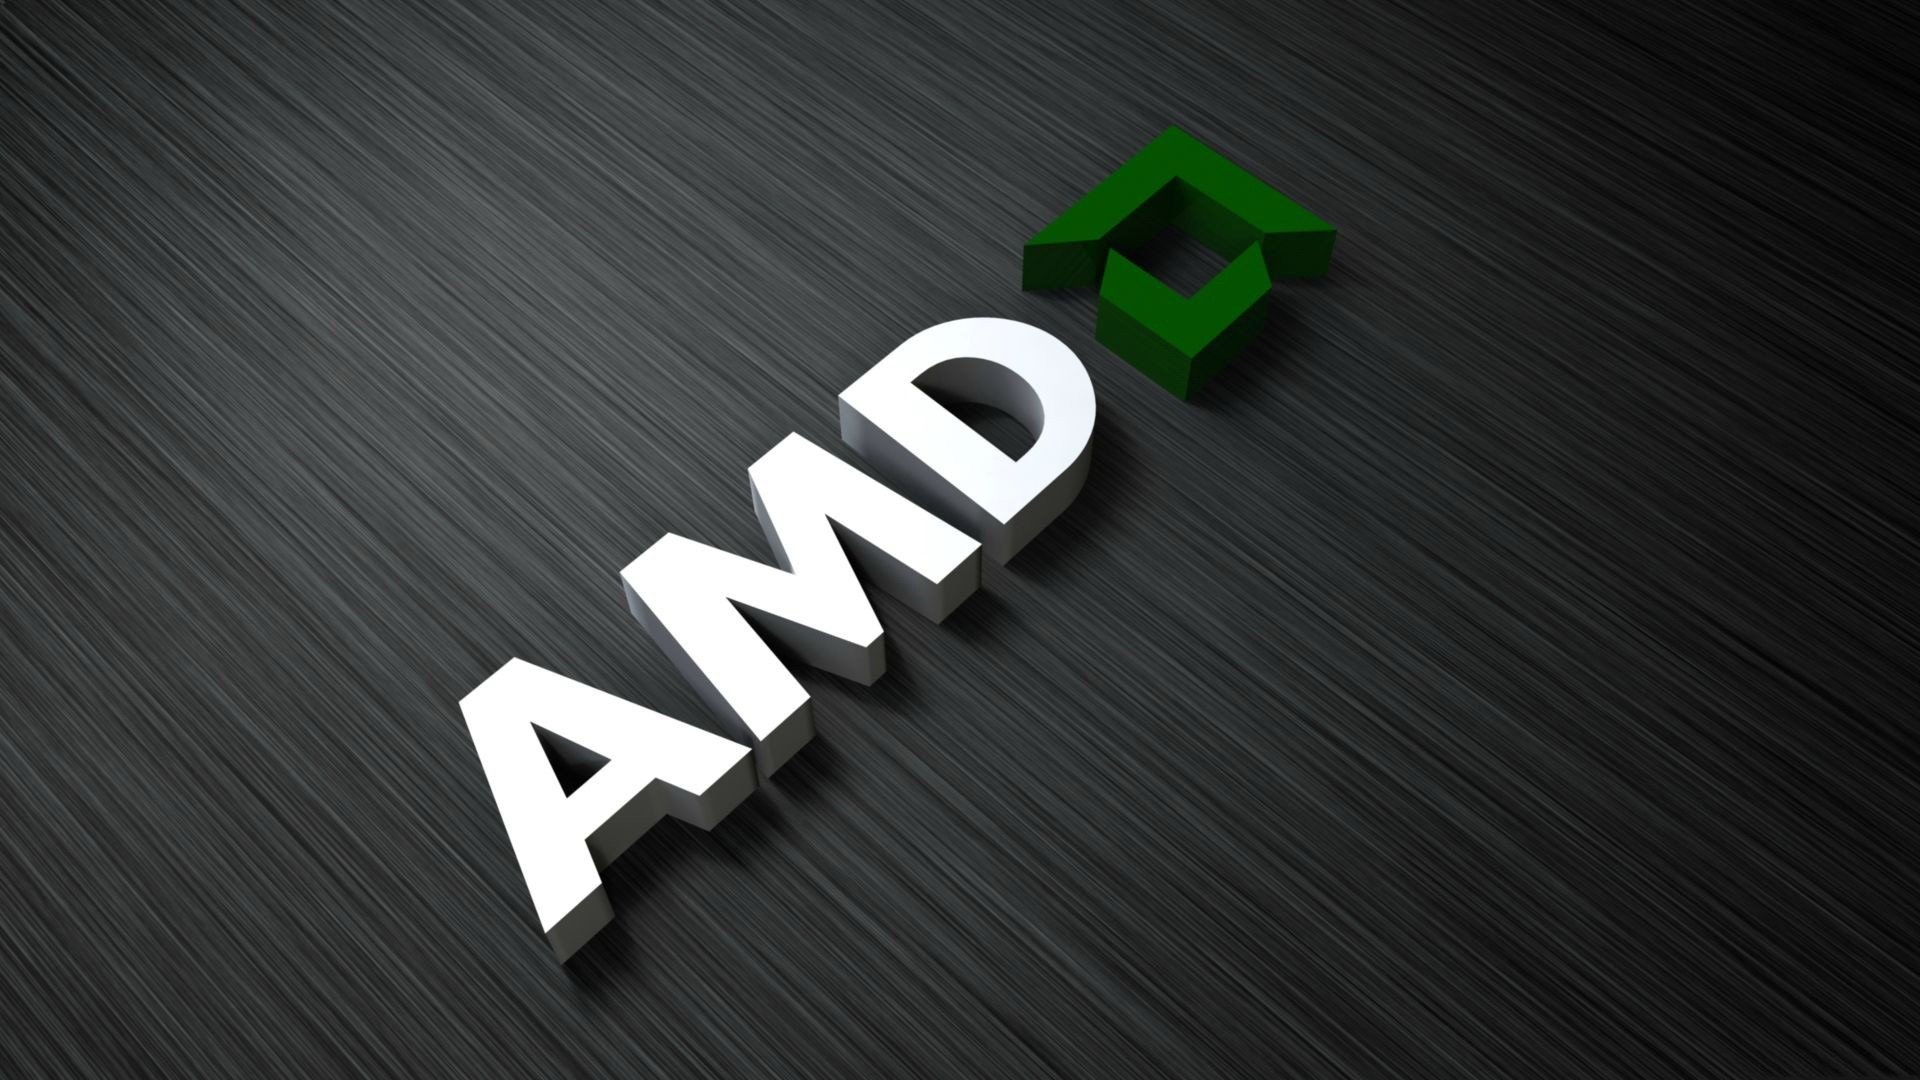 Plany AMD w przecieku: nowe procesory i karty graficzne